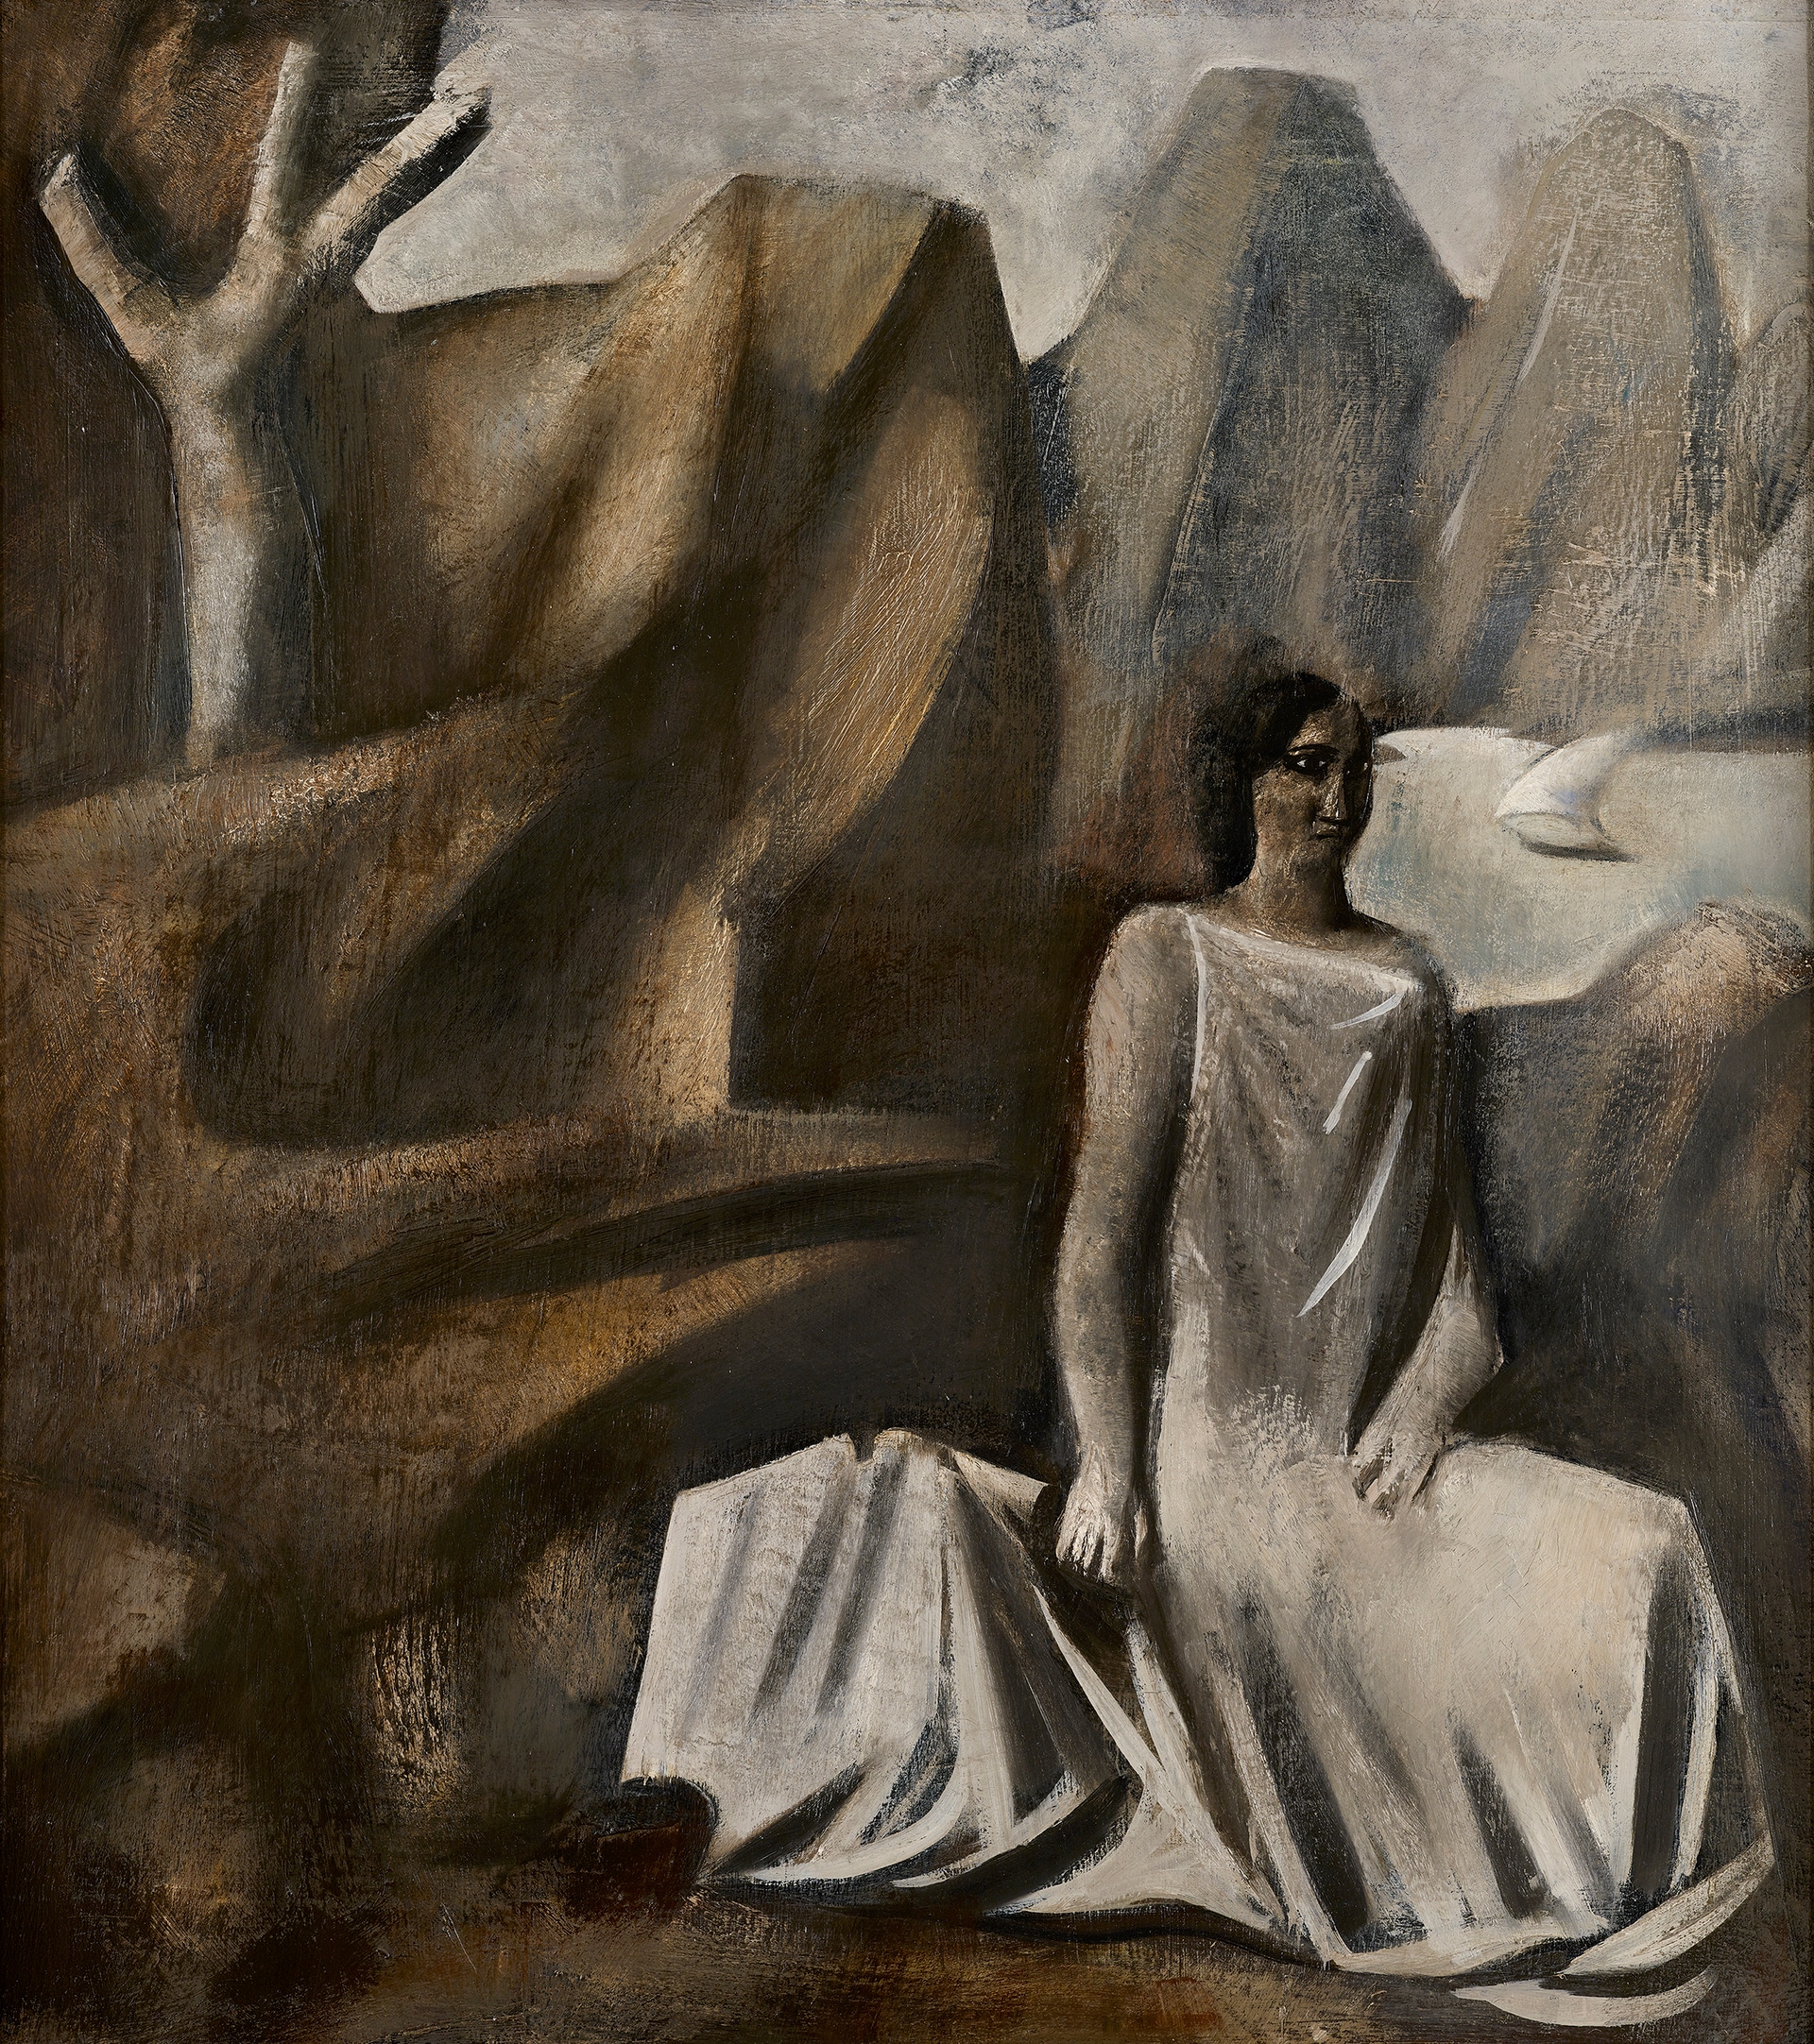 Mario Sironi: Composizione (La fata della montagna) 1928, olio su tela, 100 x 90 cm, Milano, Casa Museo Boschi Di Stefano © Mario Sironi, by SIAE 2021 